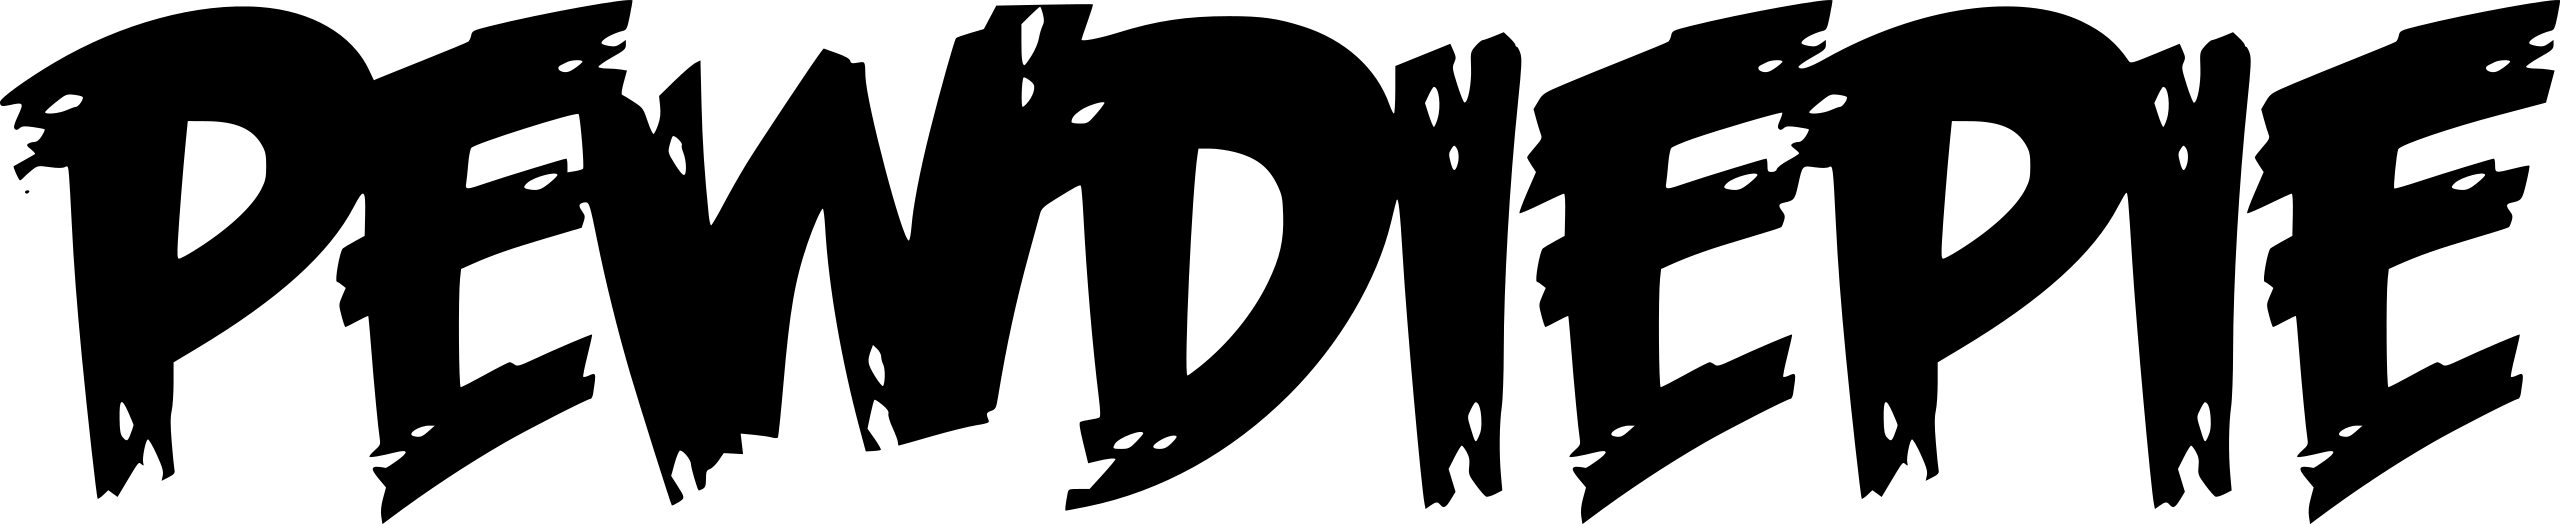 PewDiePie_logo_(2010-2013).svg